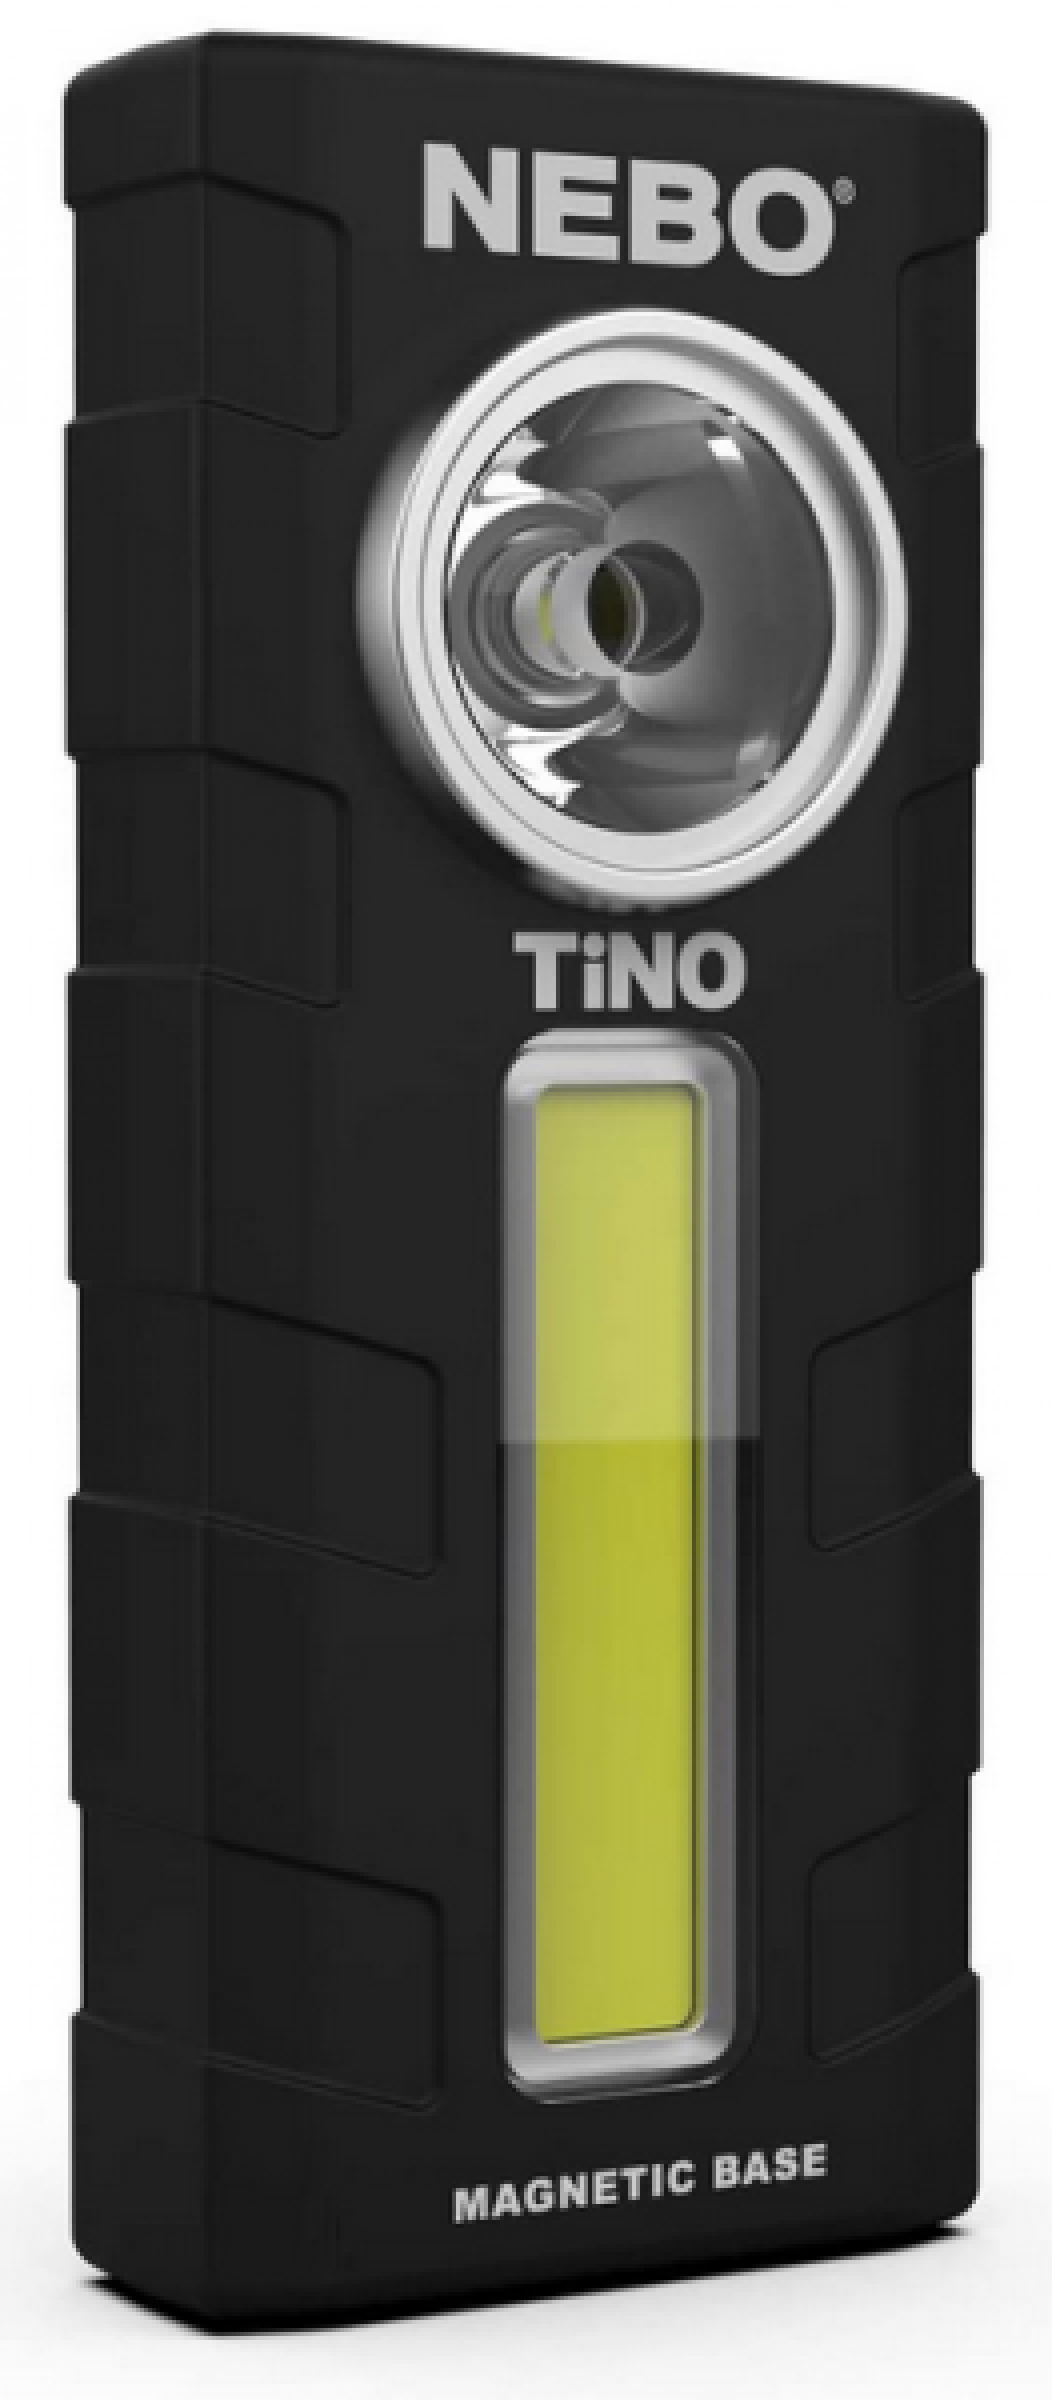 NEBO torch TINO - 300 lumens